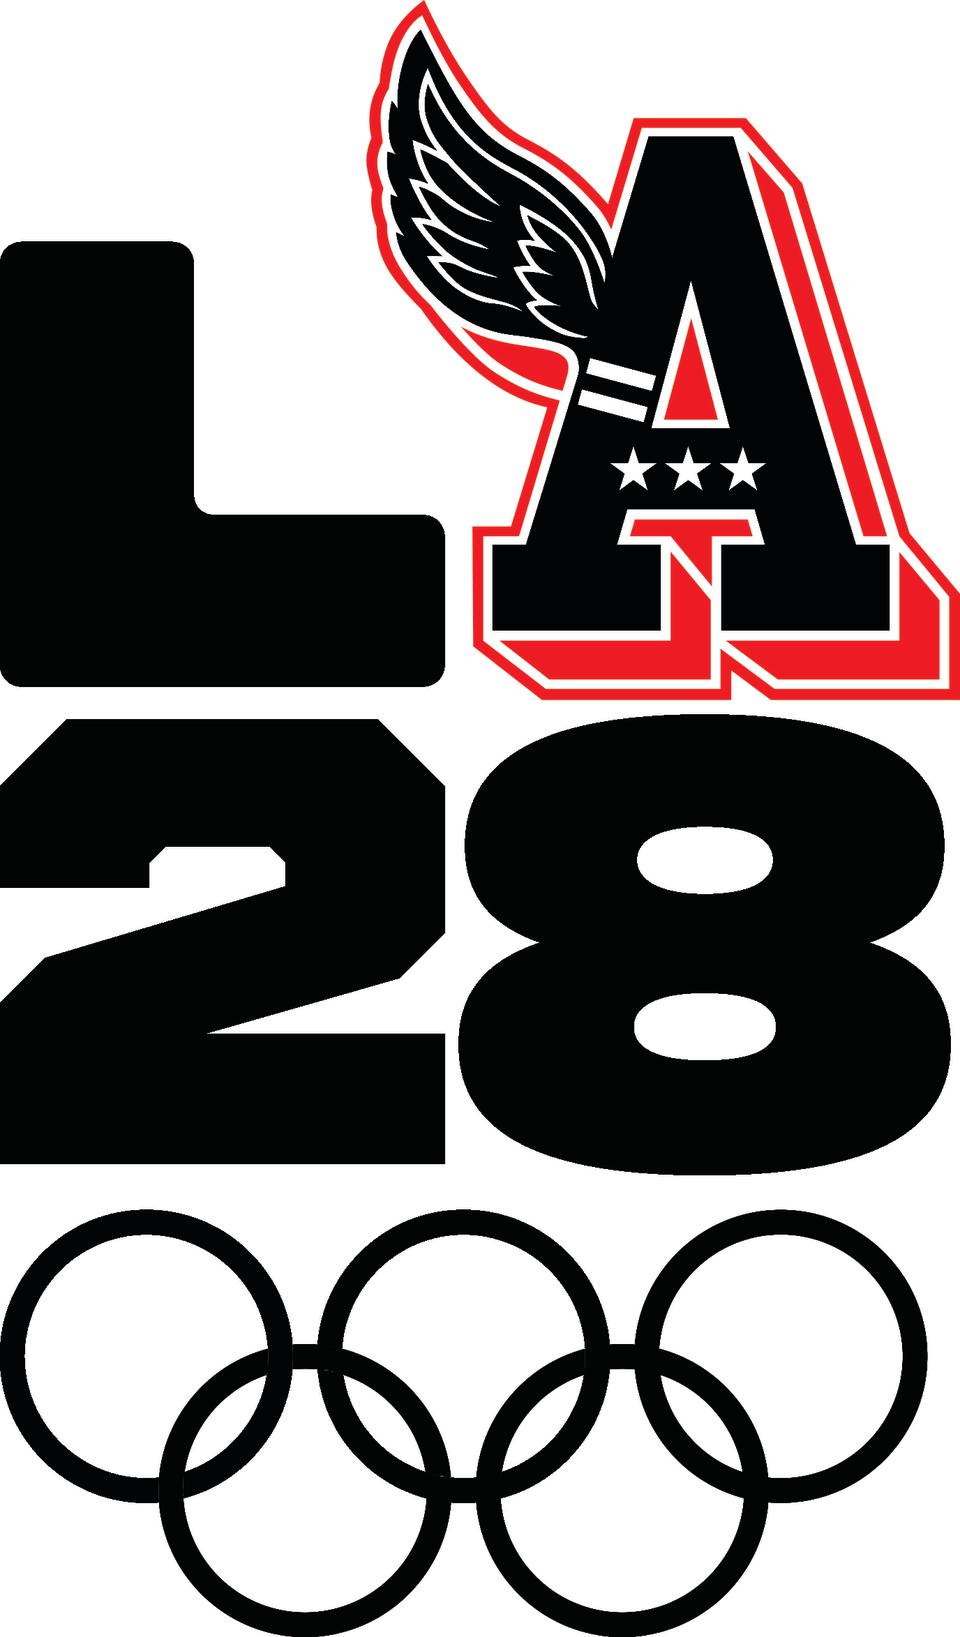 Ralph Lauren's version of the LA28 logo.